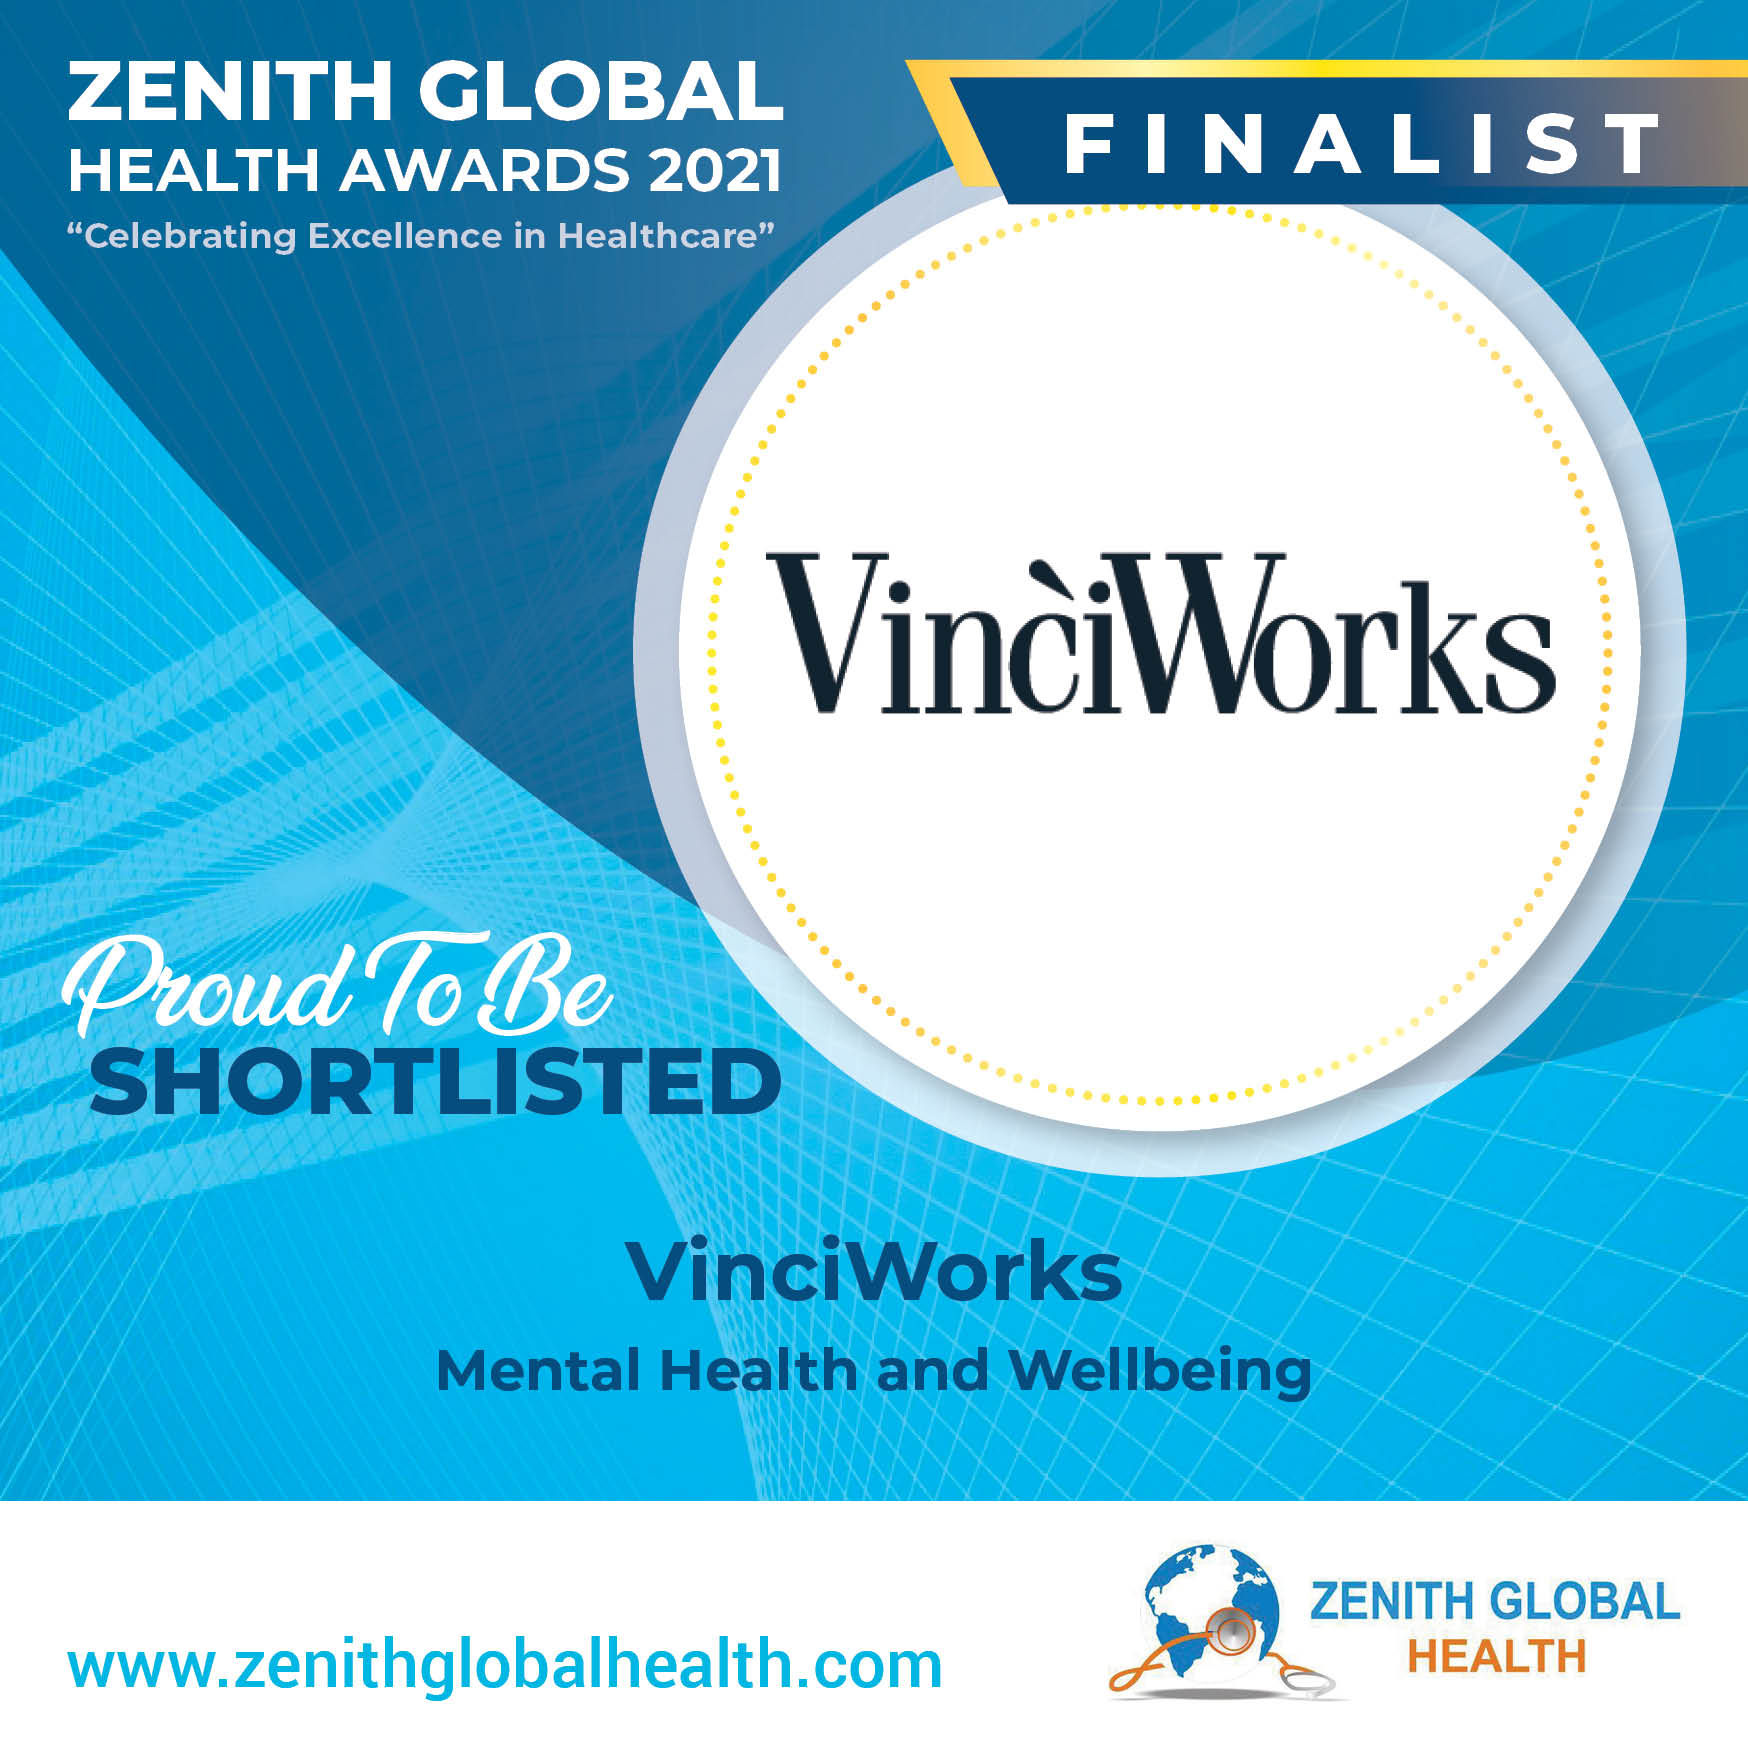 VinciWorks mental health training course nominated for Zenith Global